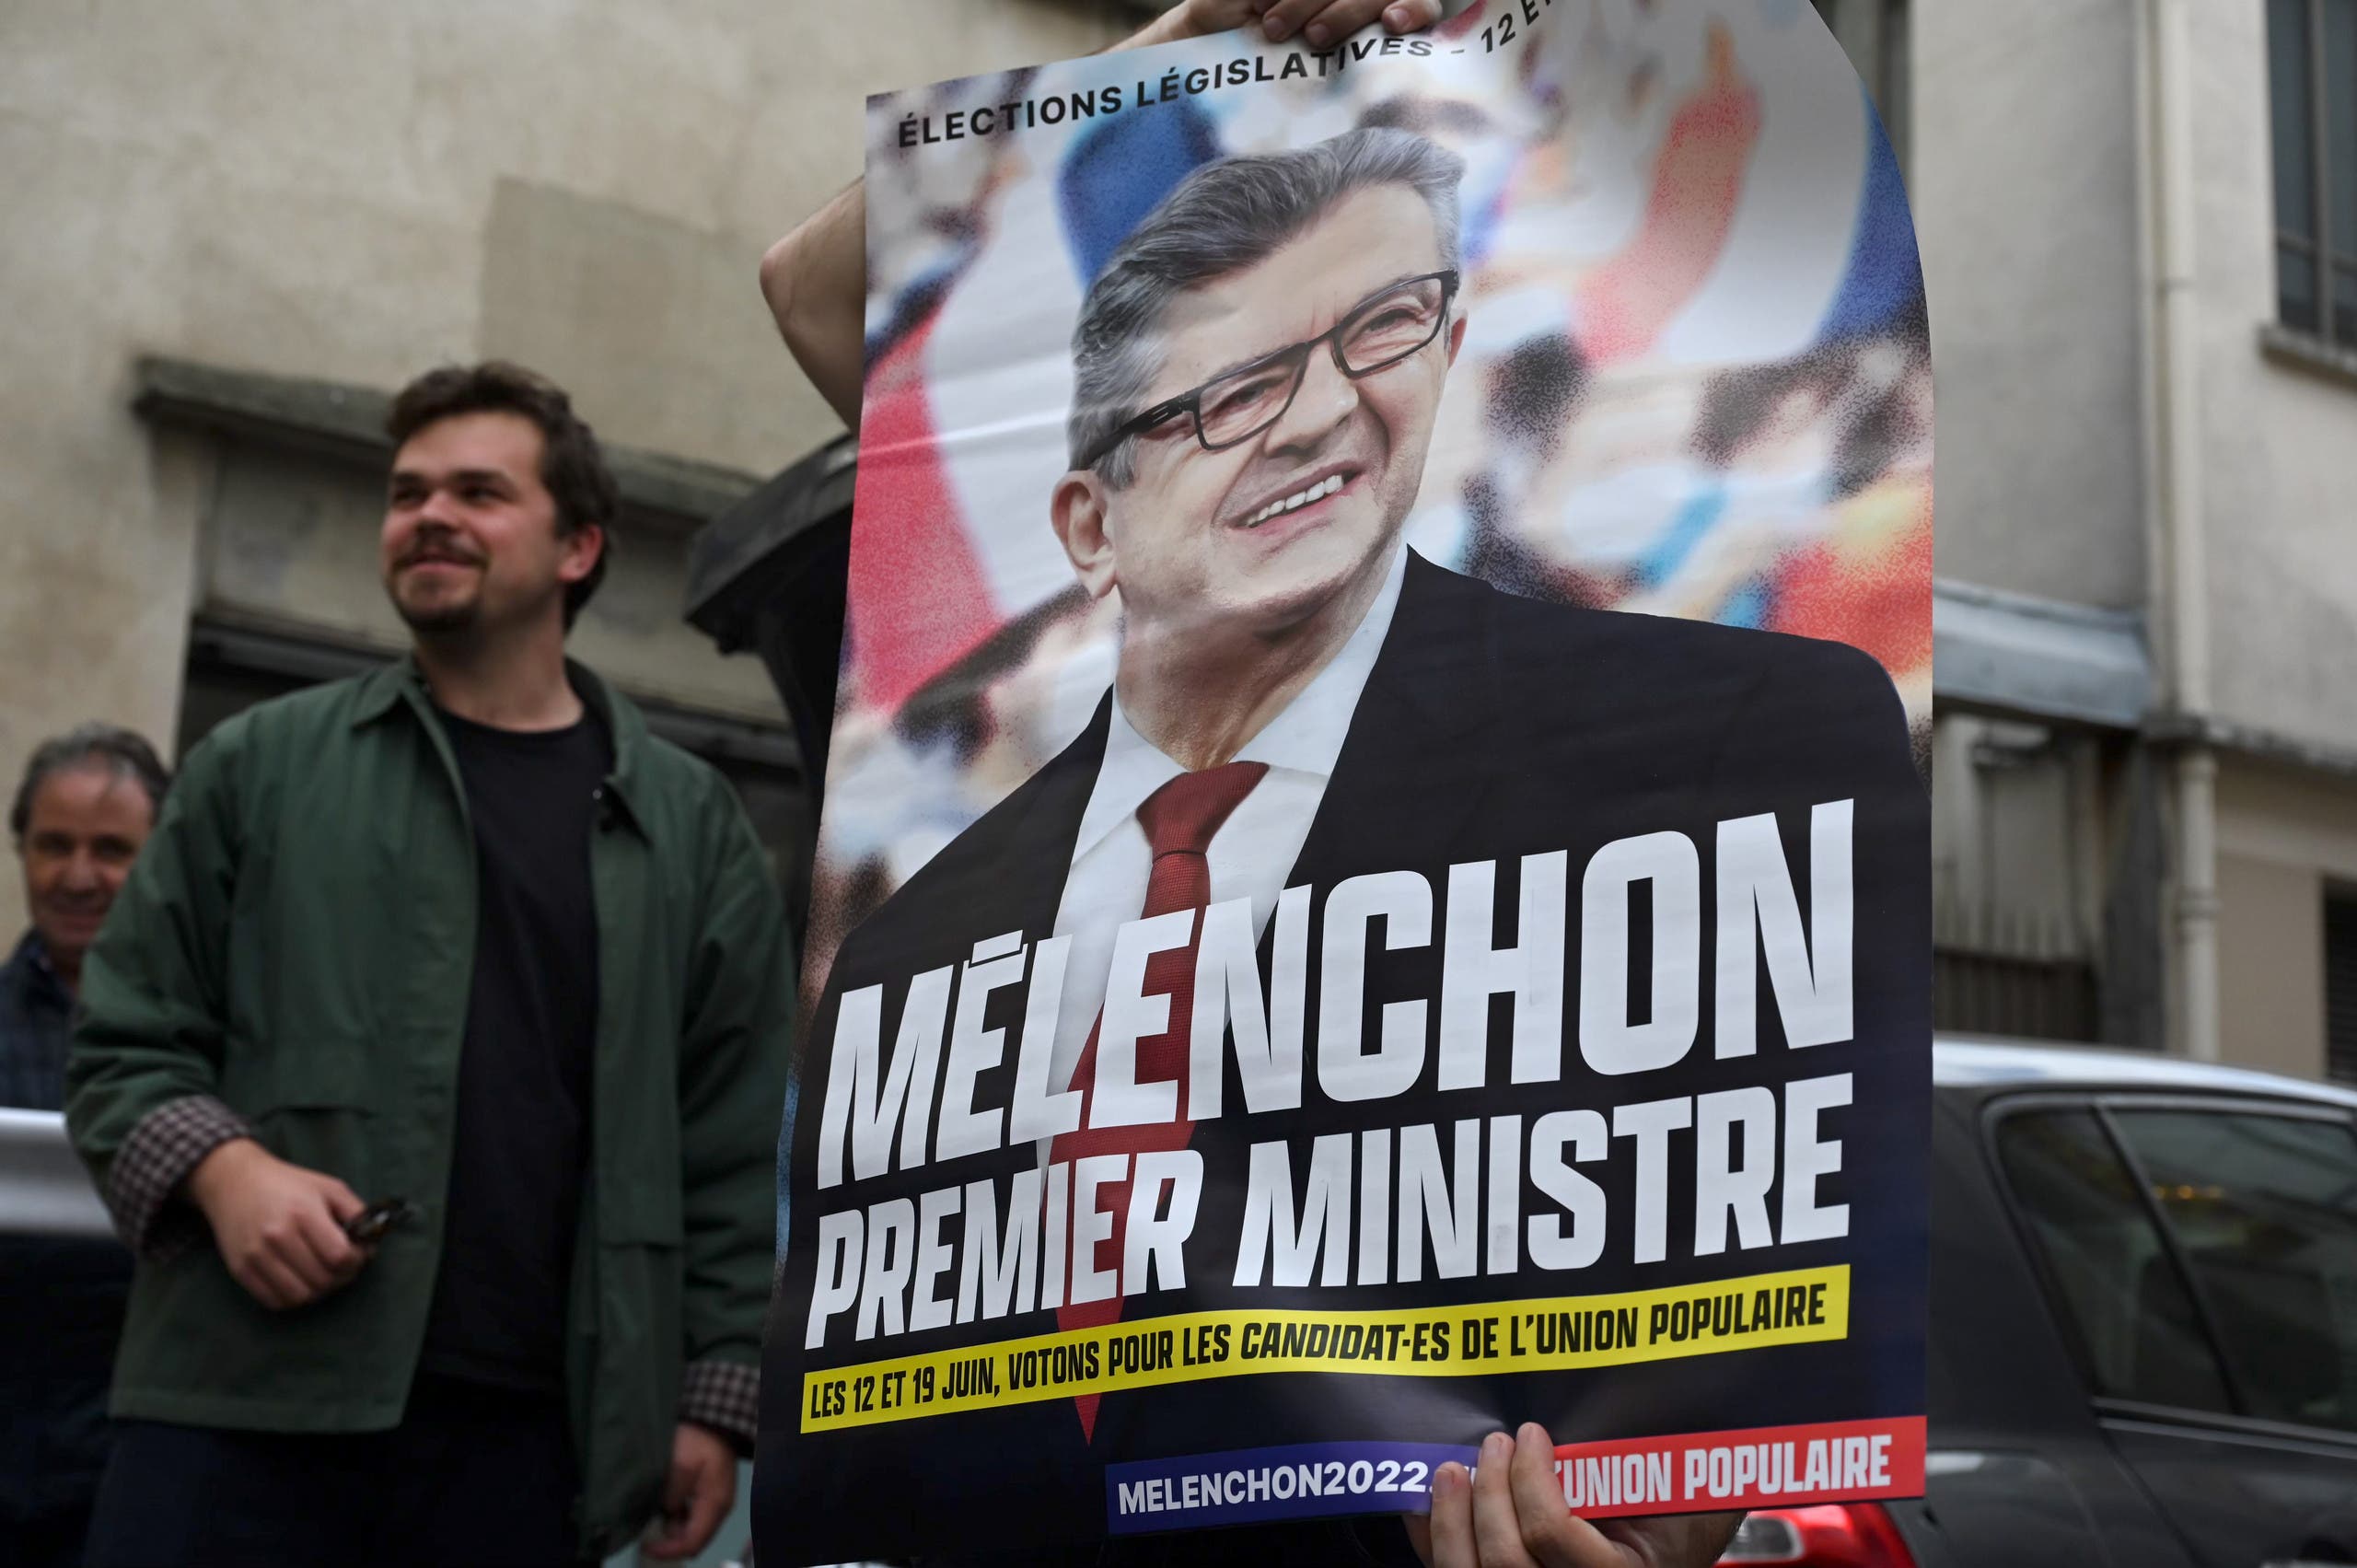 مناصر لليسار الفرنسي يرفع لافتة تطالب بتسمية ميلانشون لرئاسة الوزراء